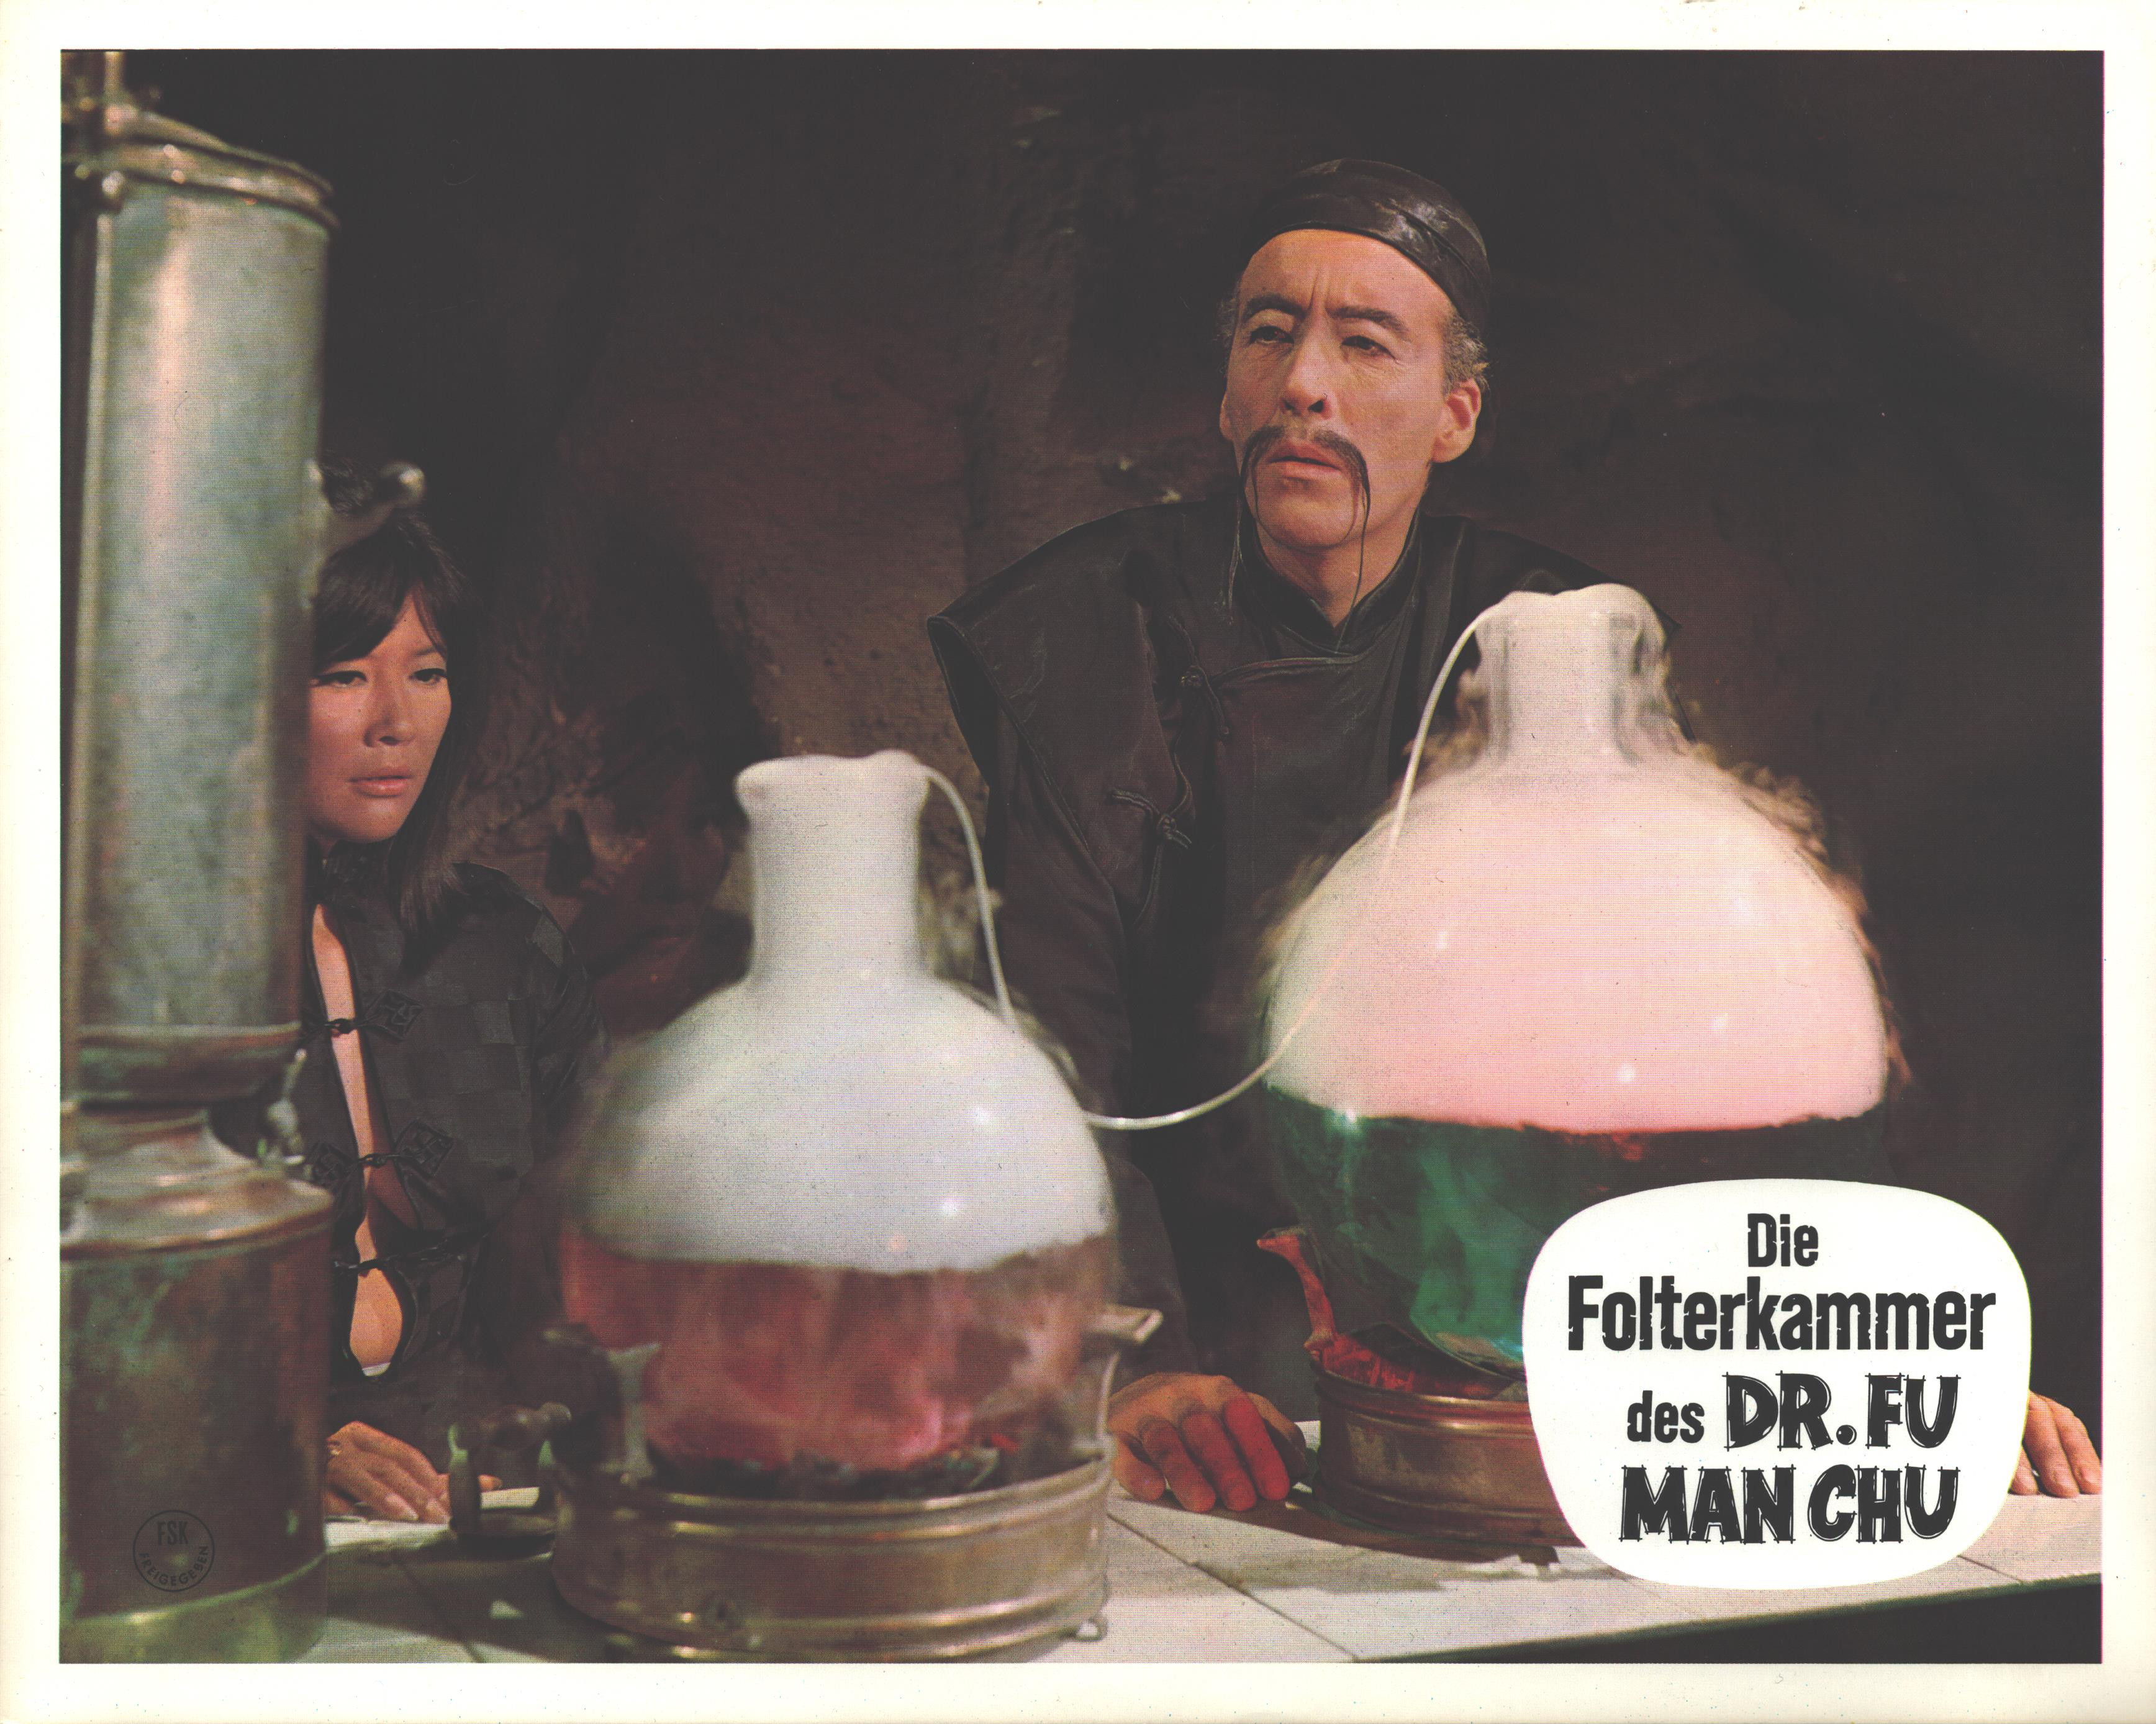 Dr. Fu Man Chu - Die ultimative HD-Gesamtedition mit ultra vielen exklusiven Extras